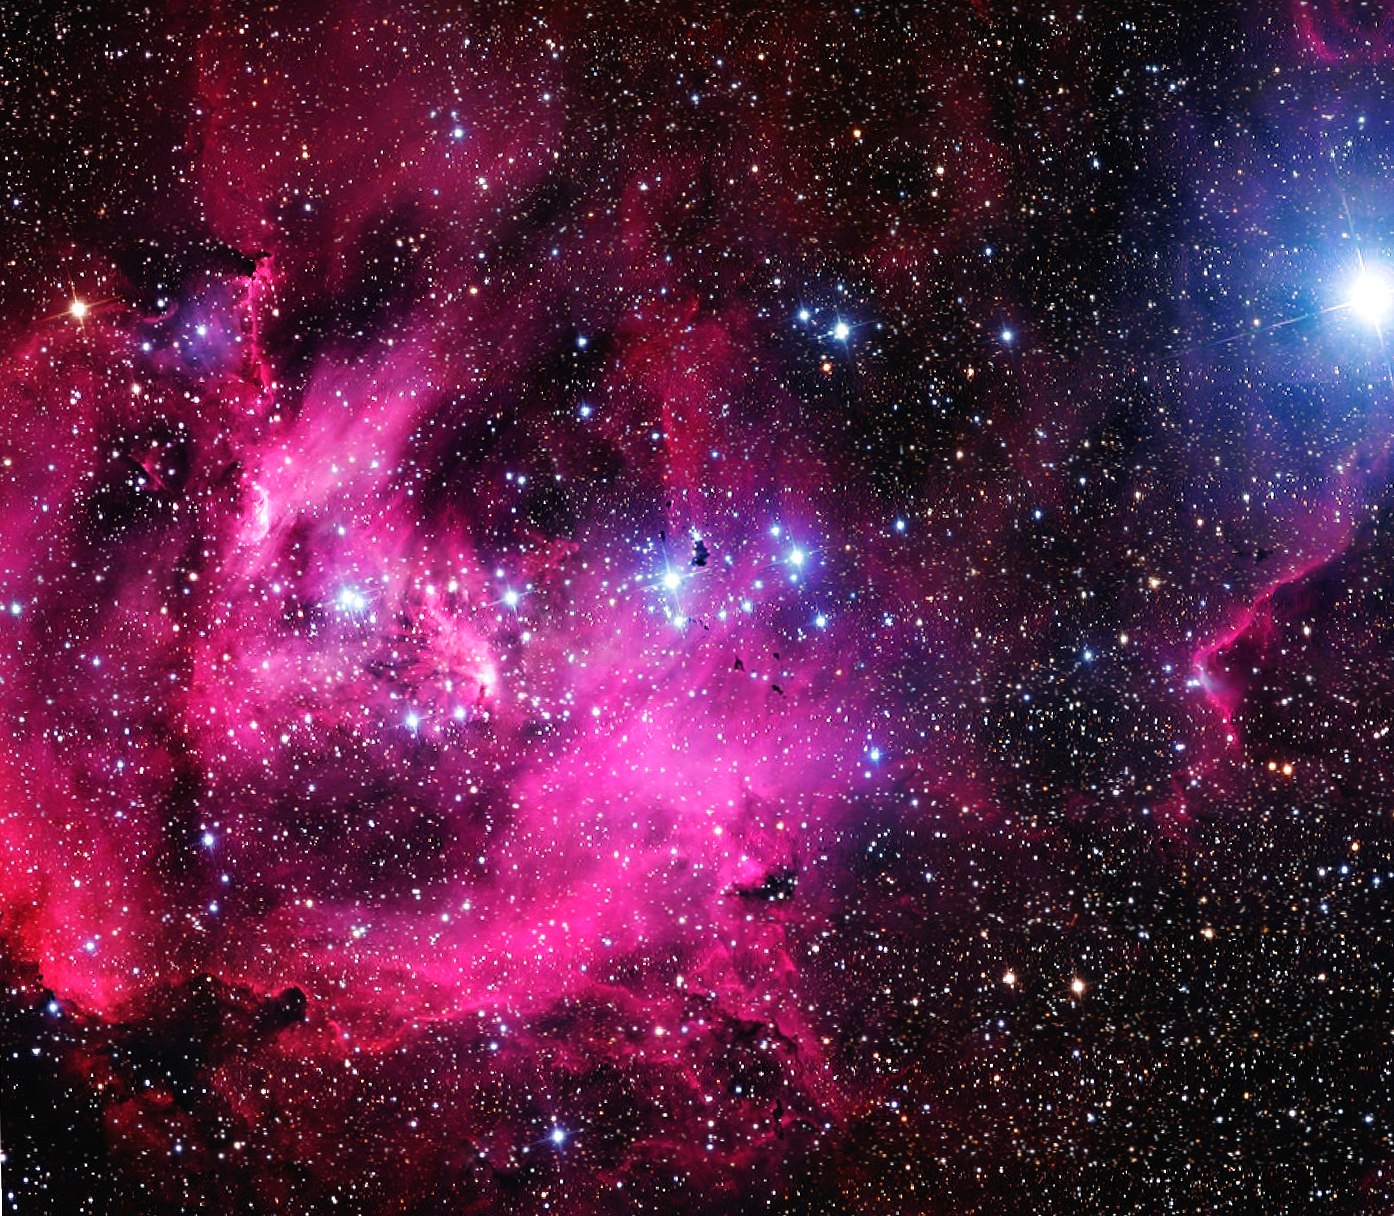 Galaxy Nebula at 1024 x 768 size wallpapers HD quality